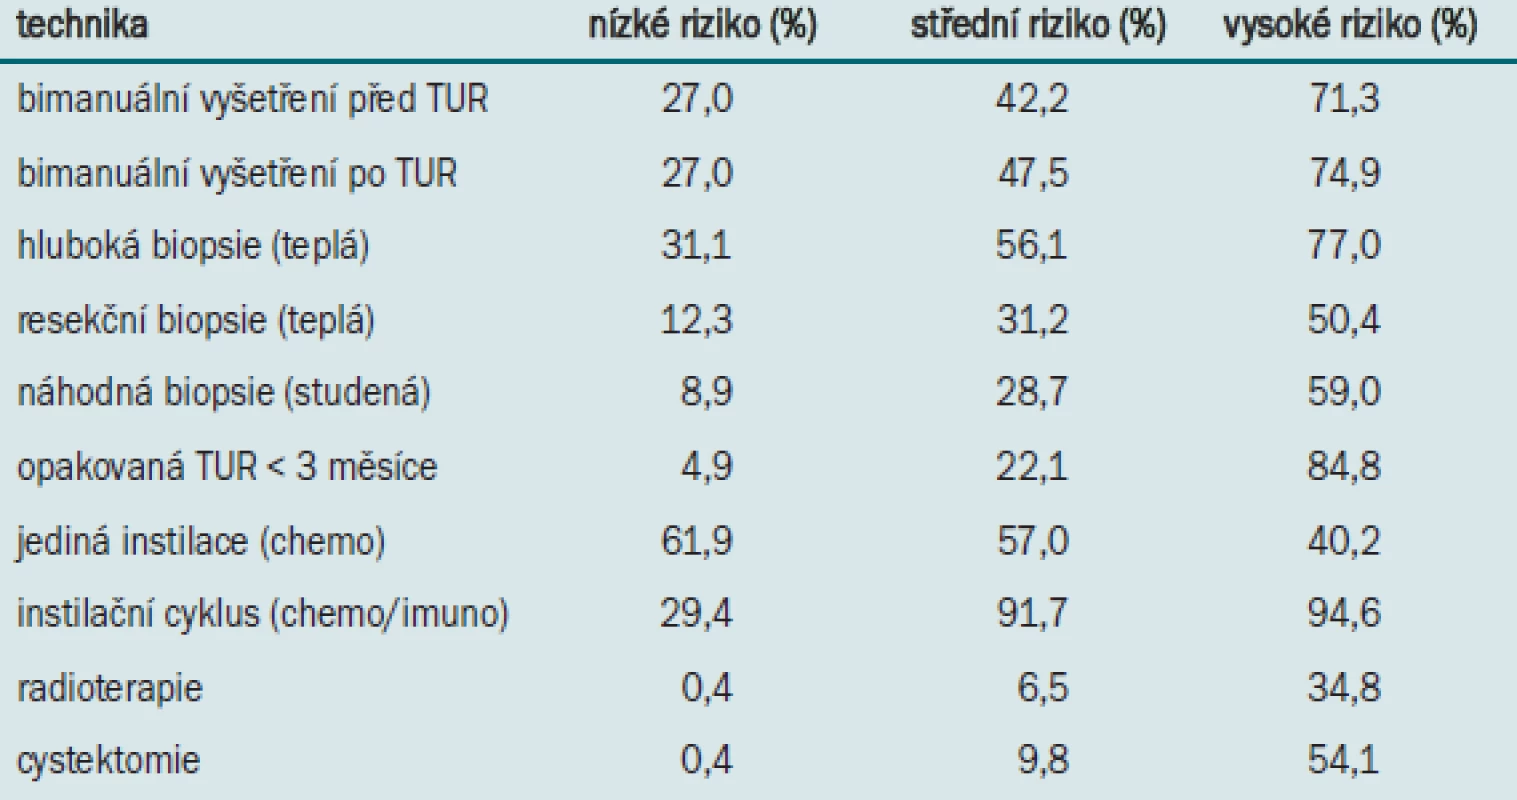 Postup nizozemských a belgických urologů (n = 244) při léčbě povrchového karcinomu močového měchýře (kromě TUR). Výsledky jsou rozděleny do skupin na základě stupně rizika.